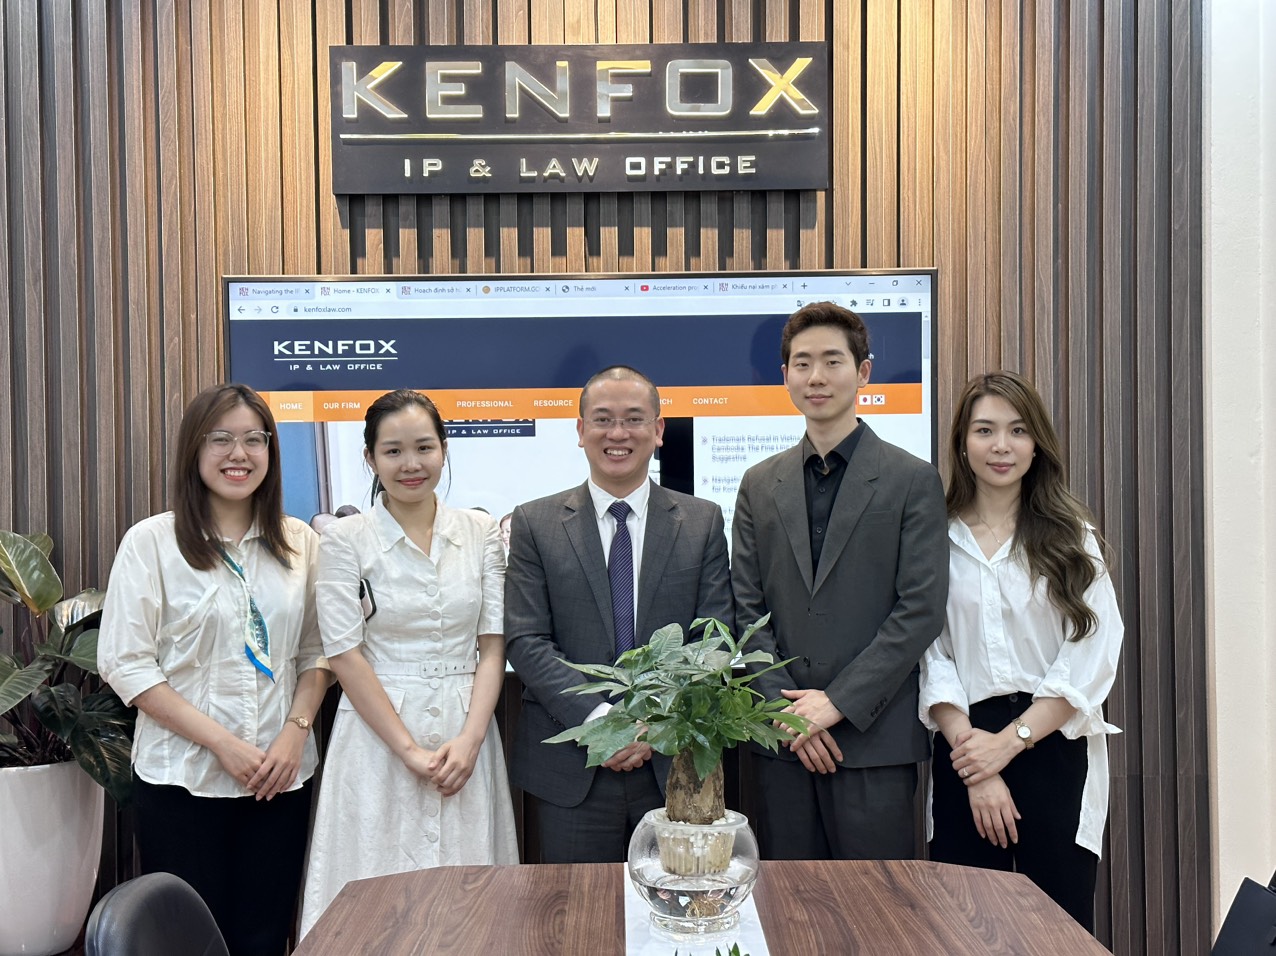 Công ty Hàn Quốc đã nhận ra tầm quan trọng của việc bảo vệ quyền SHTT của họ tại Việt Nam và tiềm năng phát triển trong thị trường mỹ phẩm. Trong chuyến thăm, đội ngũ của KENFOX đã cung cấp cho đại diện công ty Hàn Quốc bức tranh tổng quan về các yêu cầu pháp lý đối với việc đăng ký mỹ phẩm tại Việt Nam và các bước liên quan đến quy trình đăng ký mỹ phẩm.